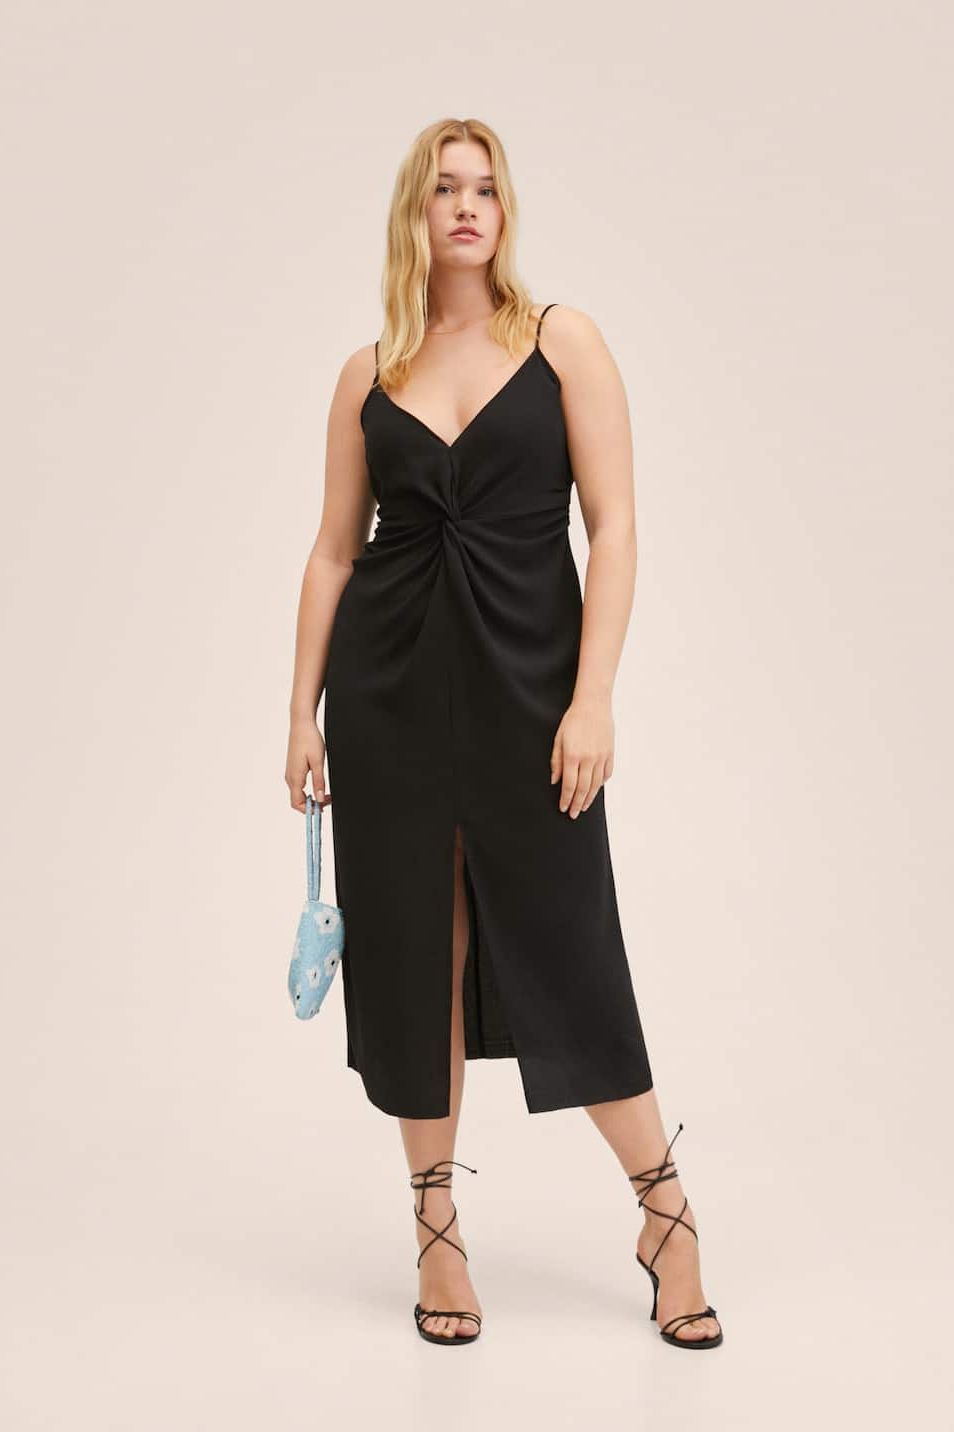 Plus Size Summer Dresses: Lightweight, Beach, & Sundresses